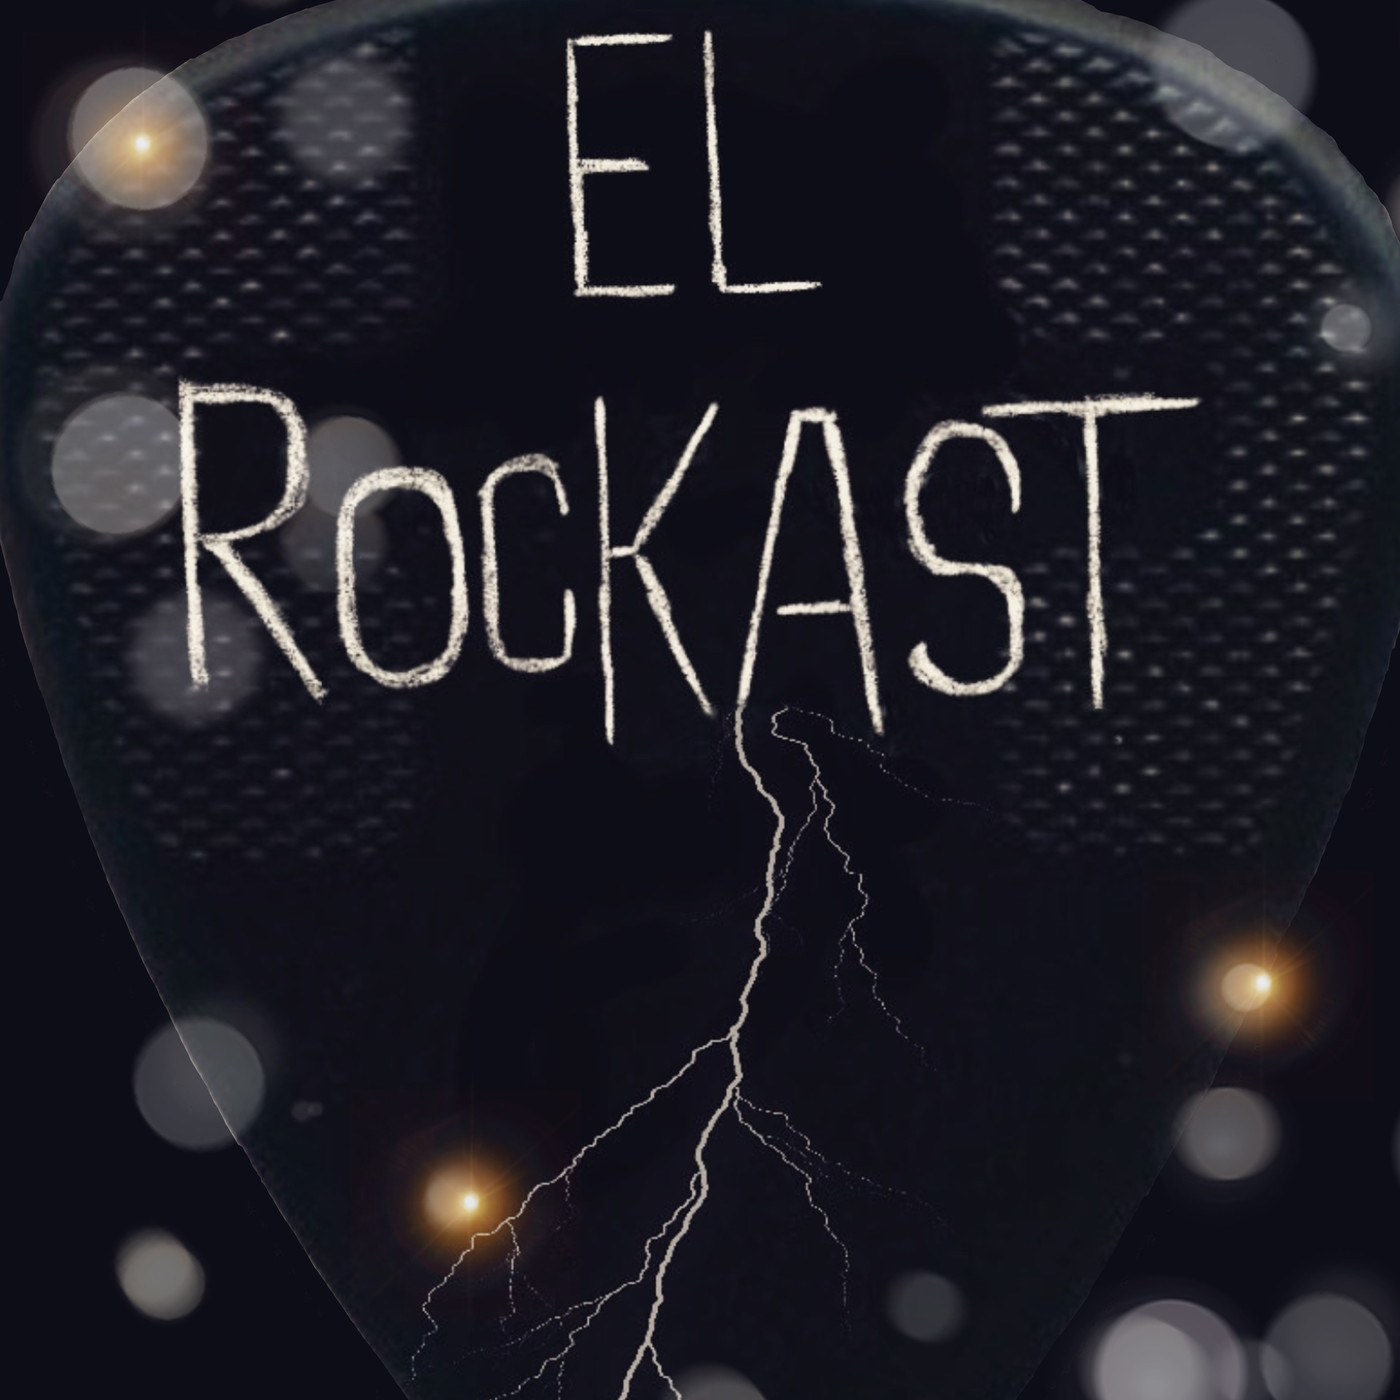 El Rockast